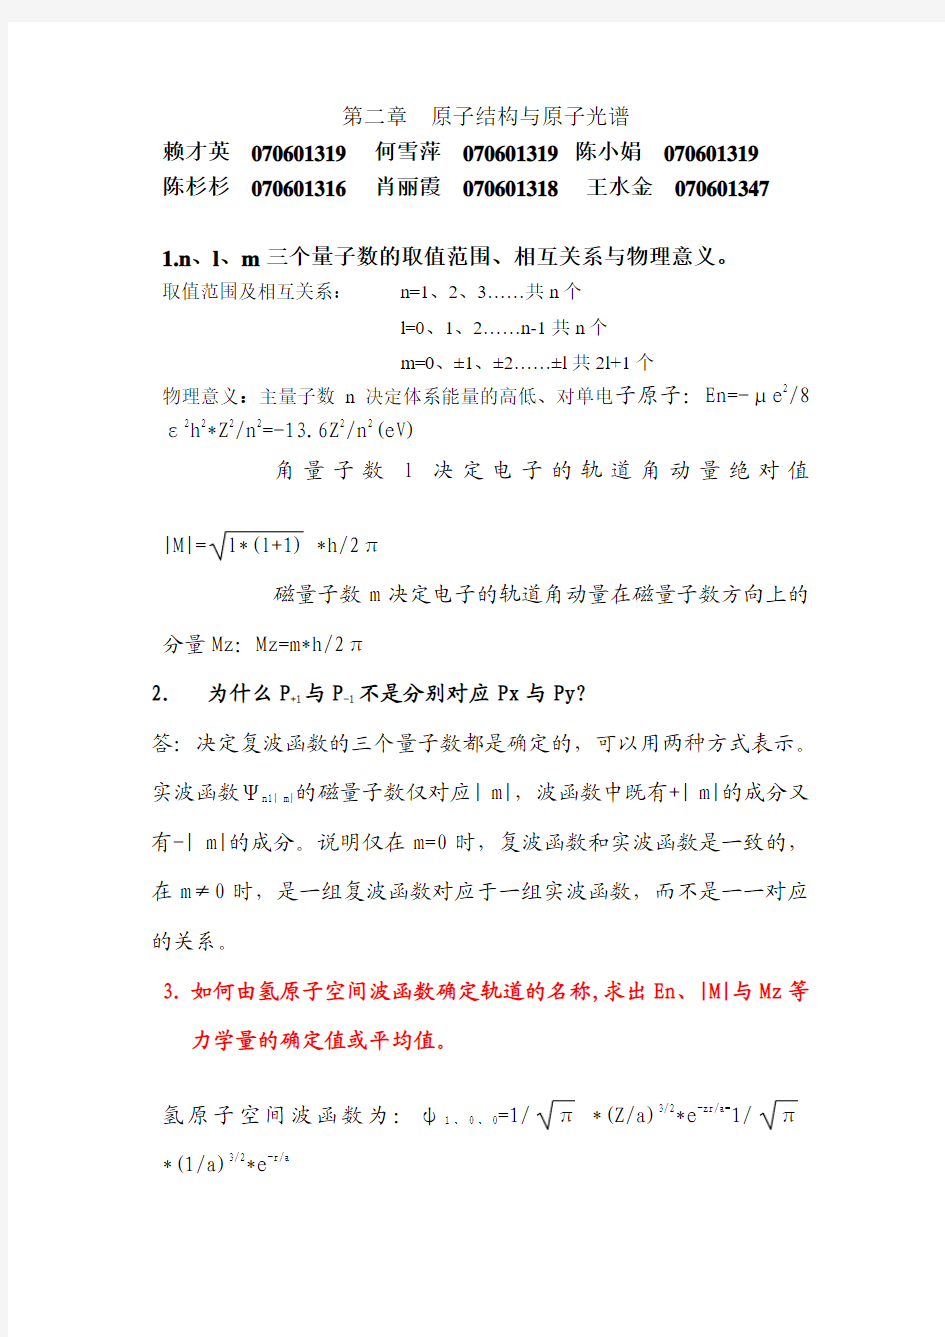 王顺荣编高教版社结构化学习题答案第2章